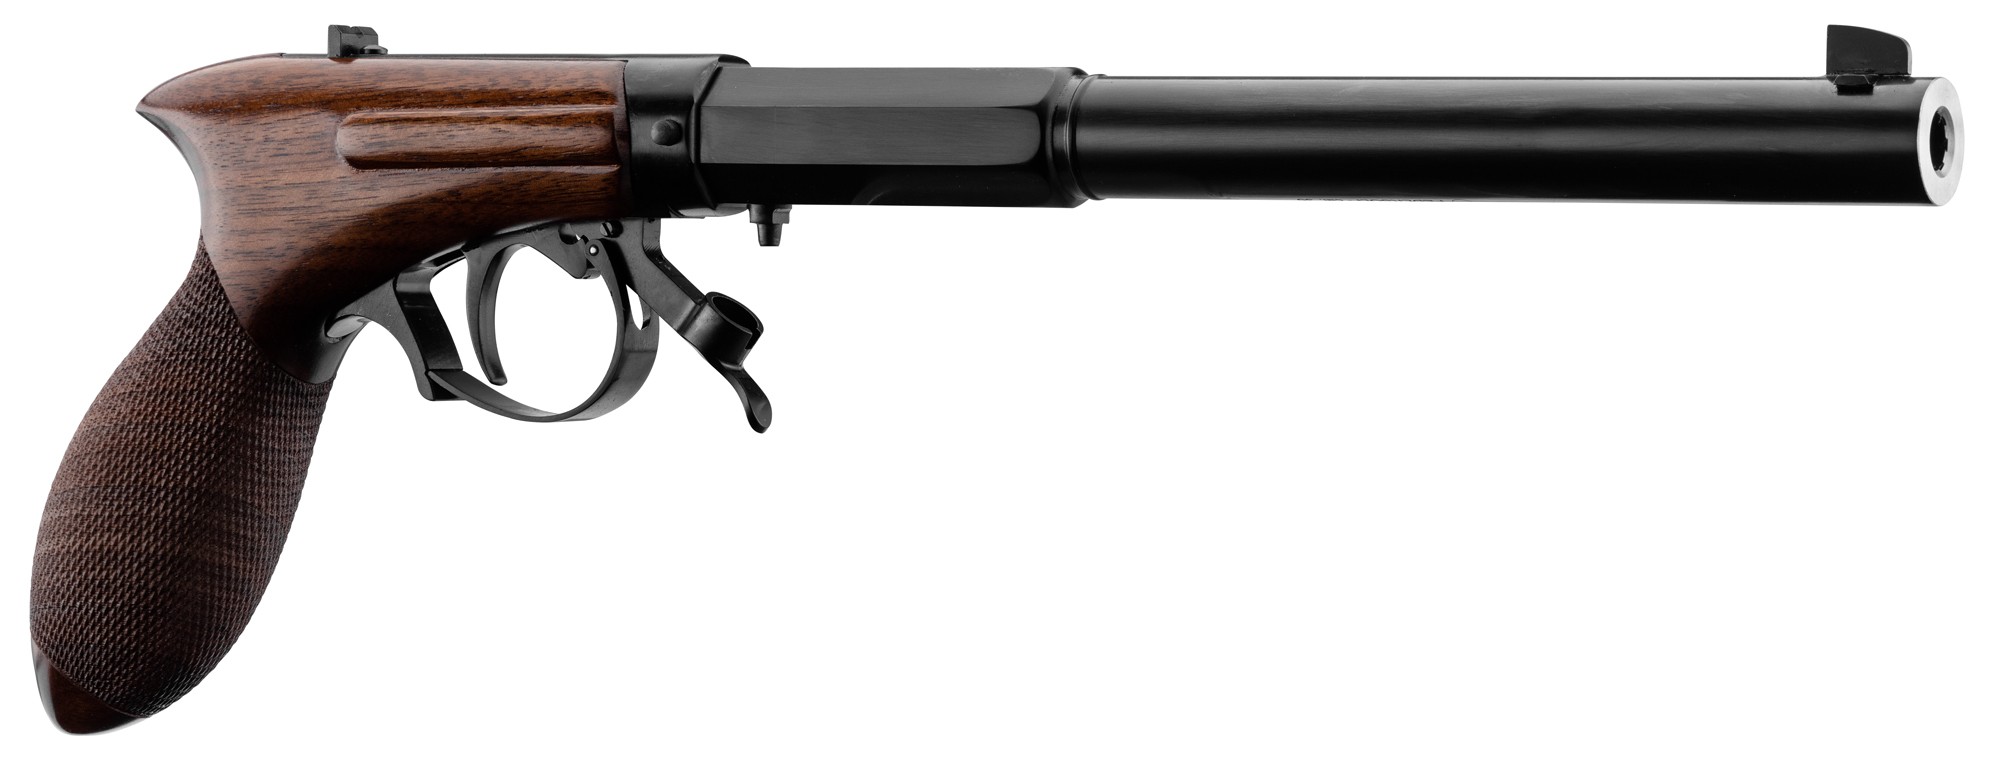 Pistolet semi-automatique - Cloueur à poudre Pour Clou 08 mm